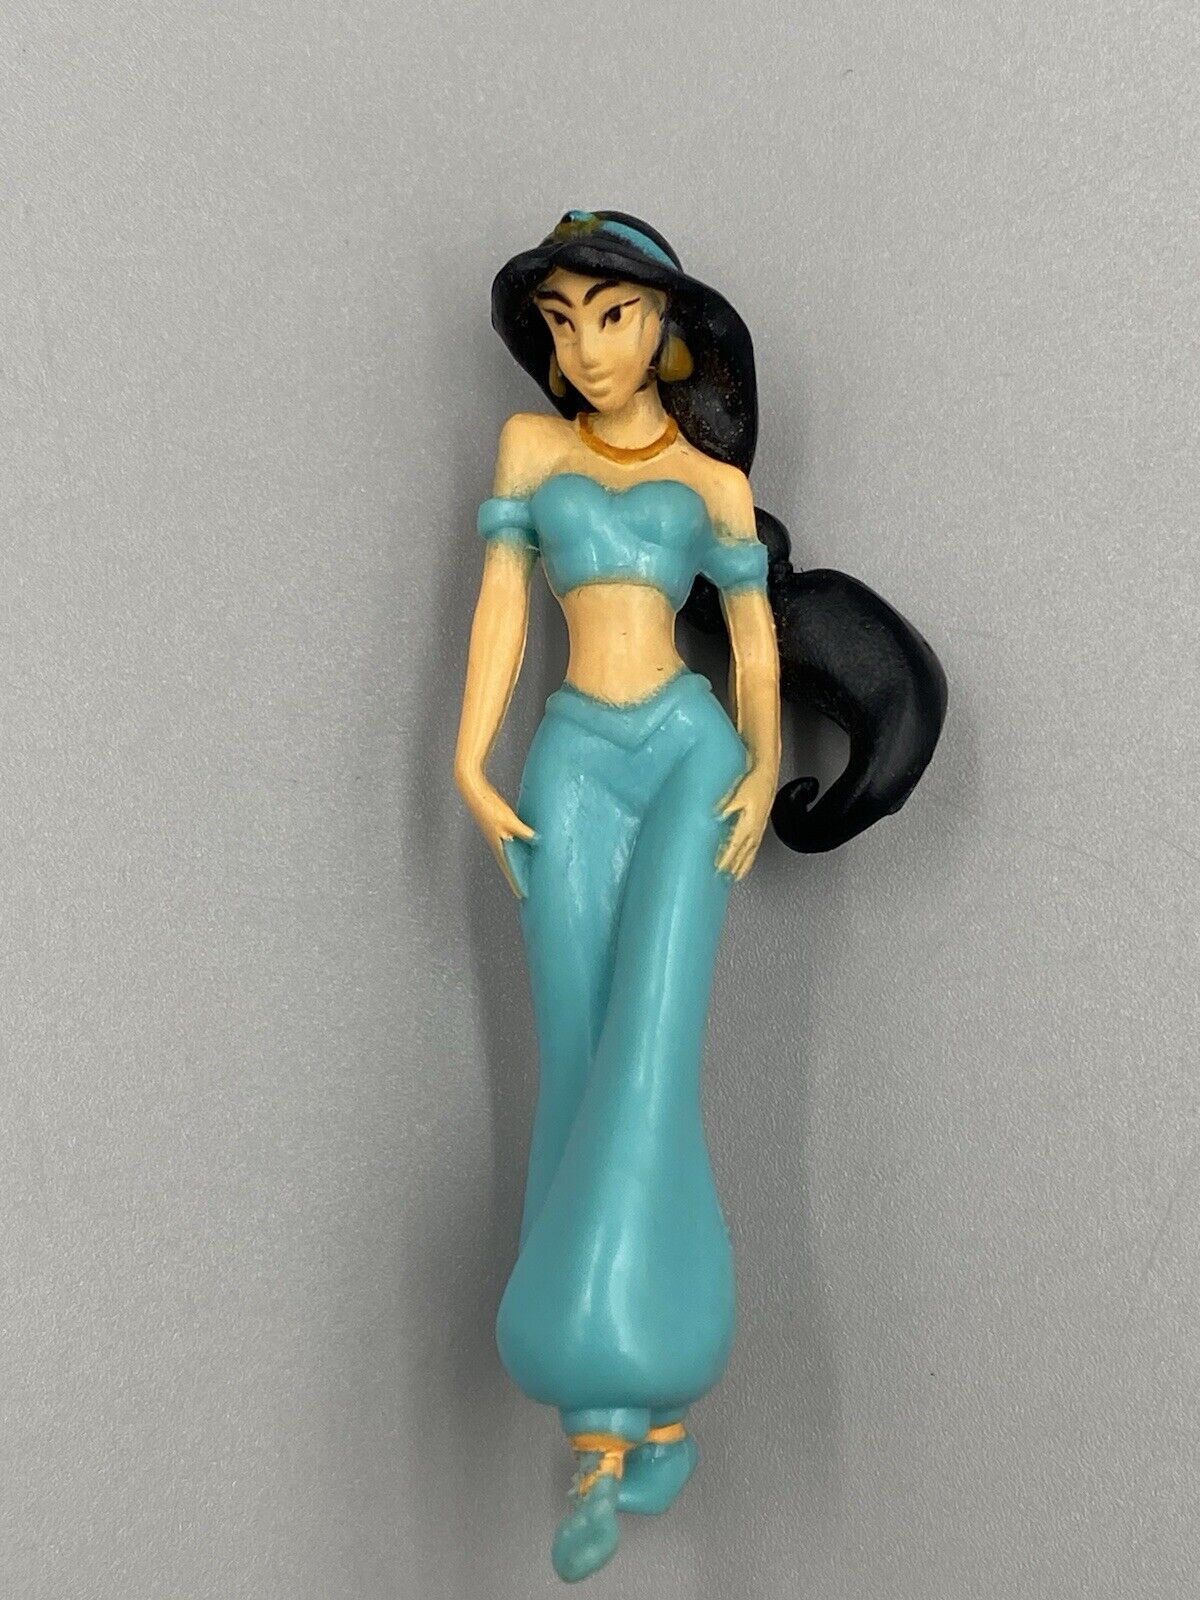 Disney Princess Jasmine From Aladdin Figure, 2.5”